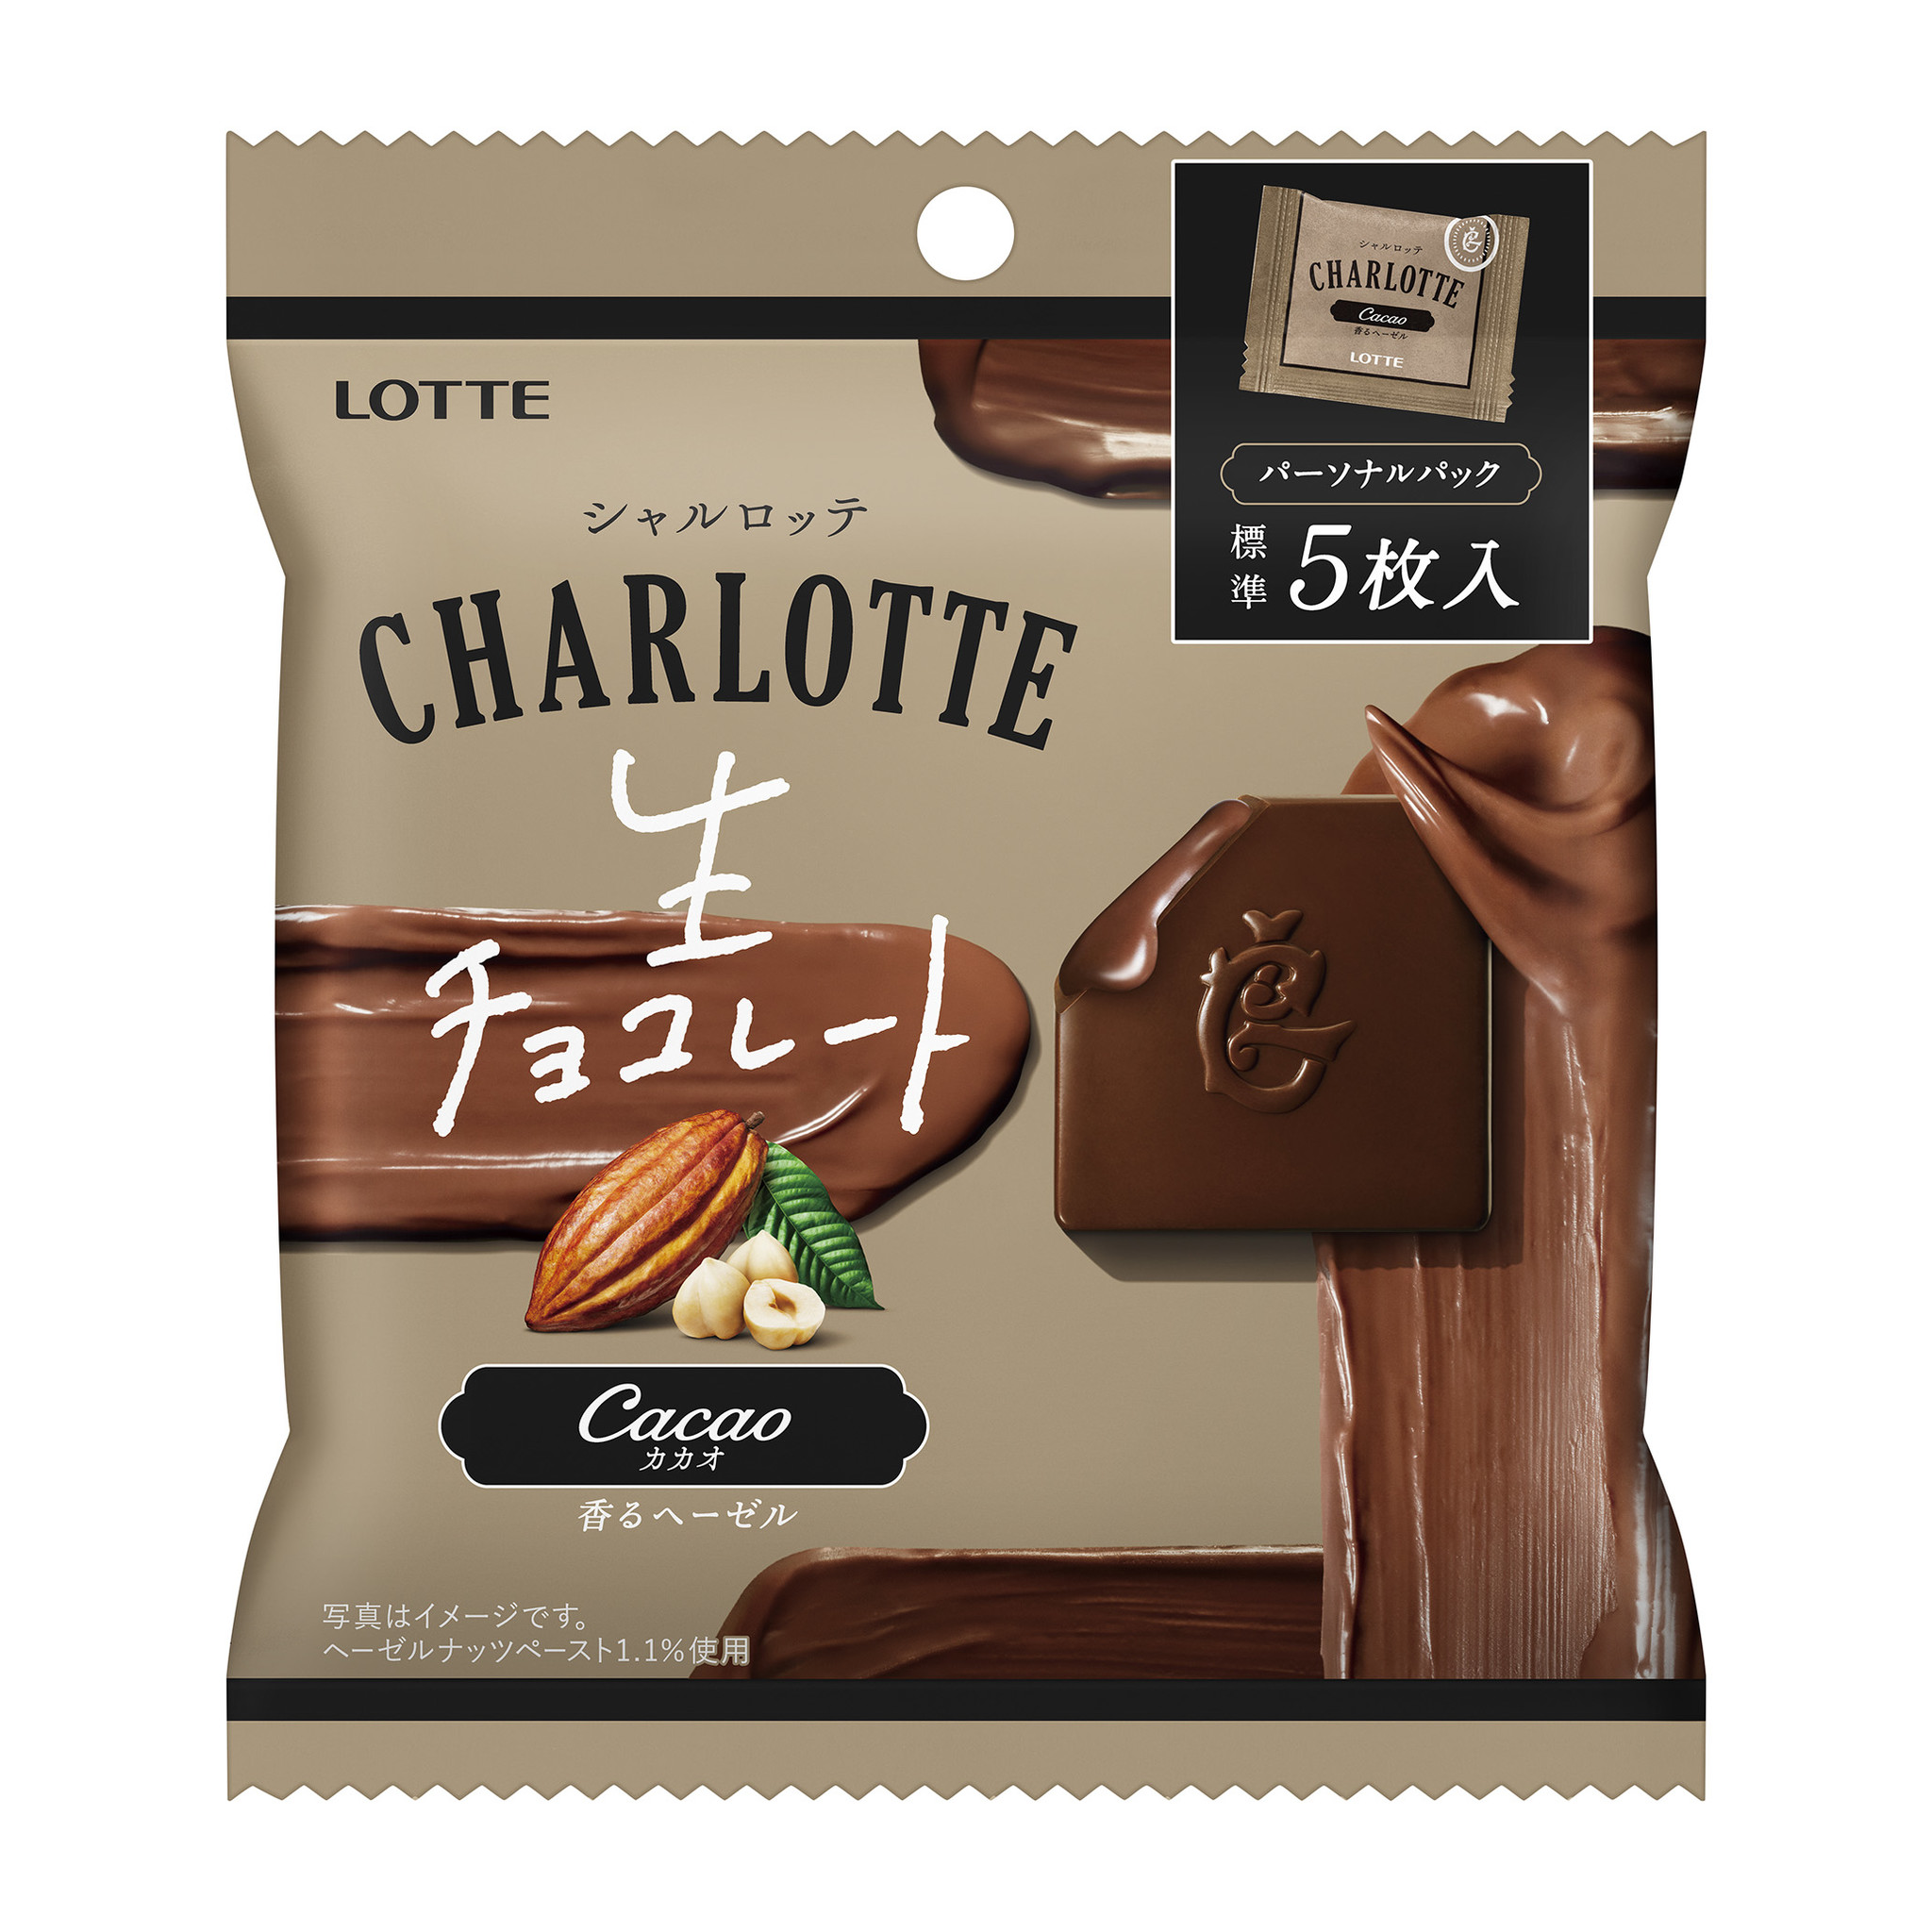 シャルロッテ から食べきりサイズが新登場 生チョコレートのおいしさが堪能できる シャルロッテ 生チョコレート カカオ パーソナルパック を発売いたします 株式会社ロッテのプレスリリース